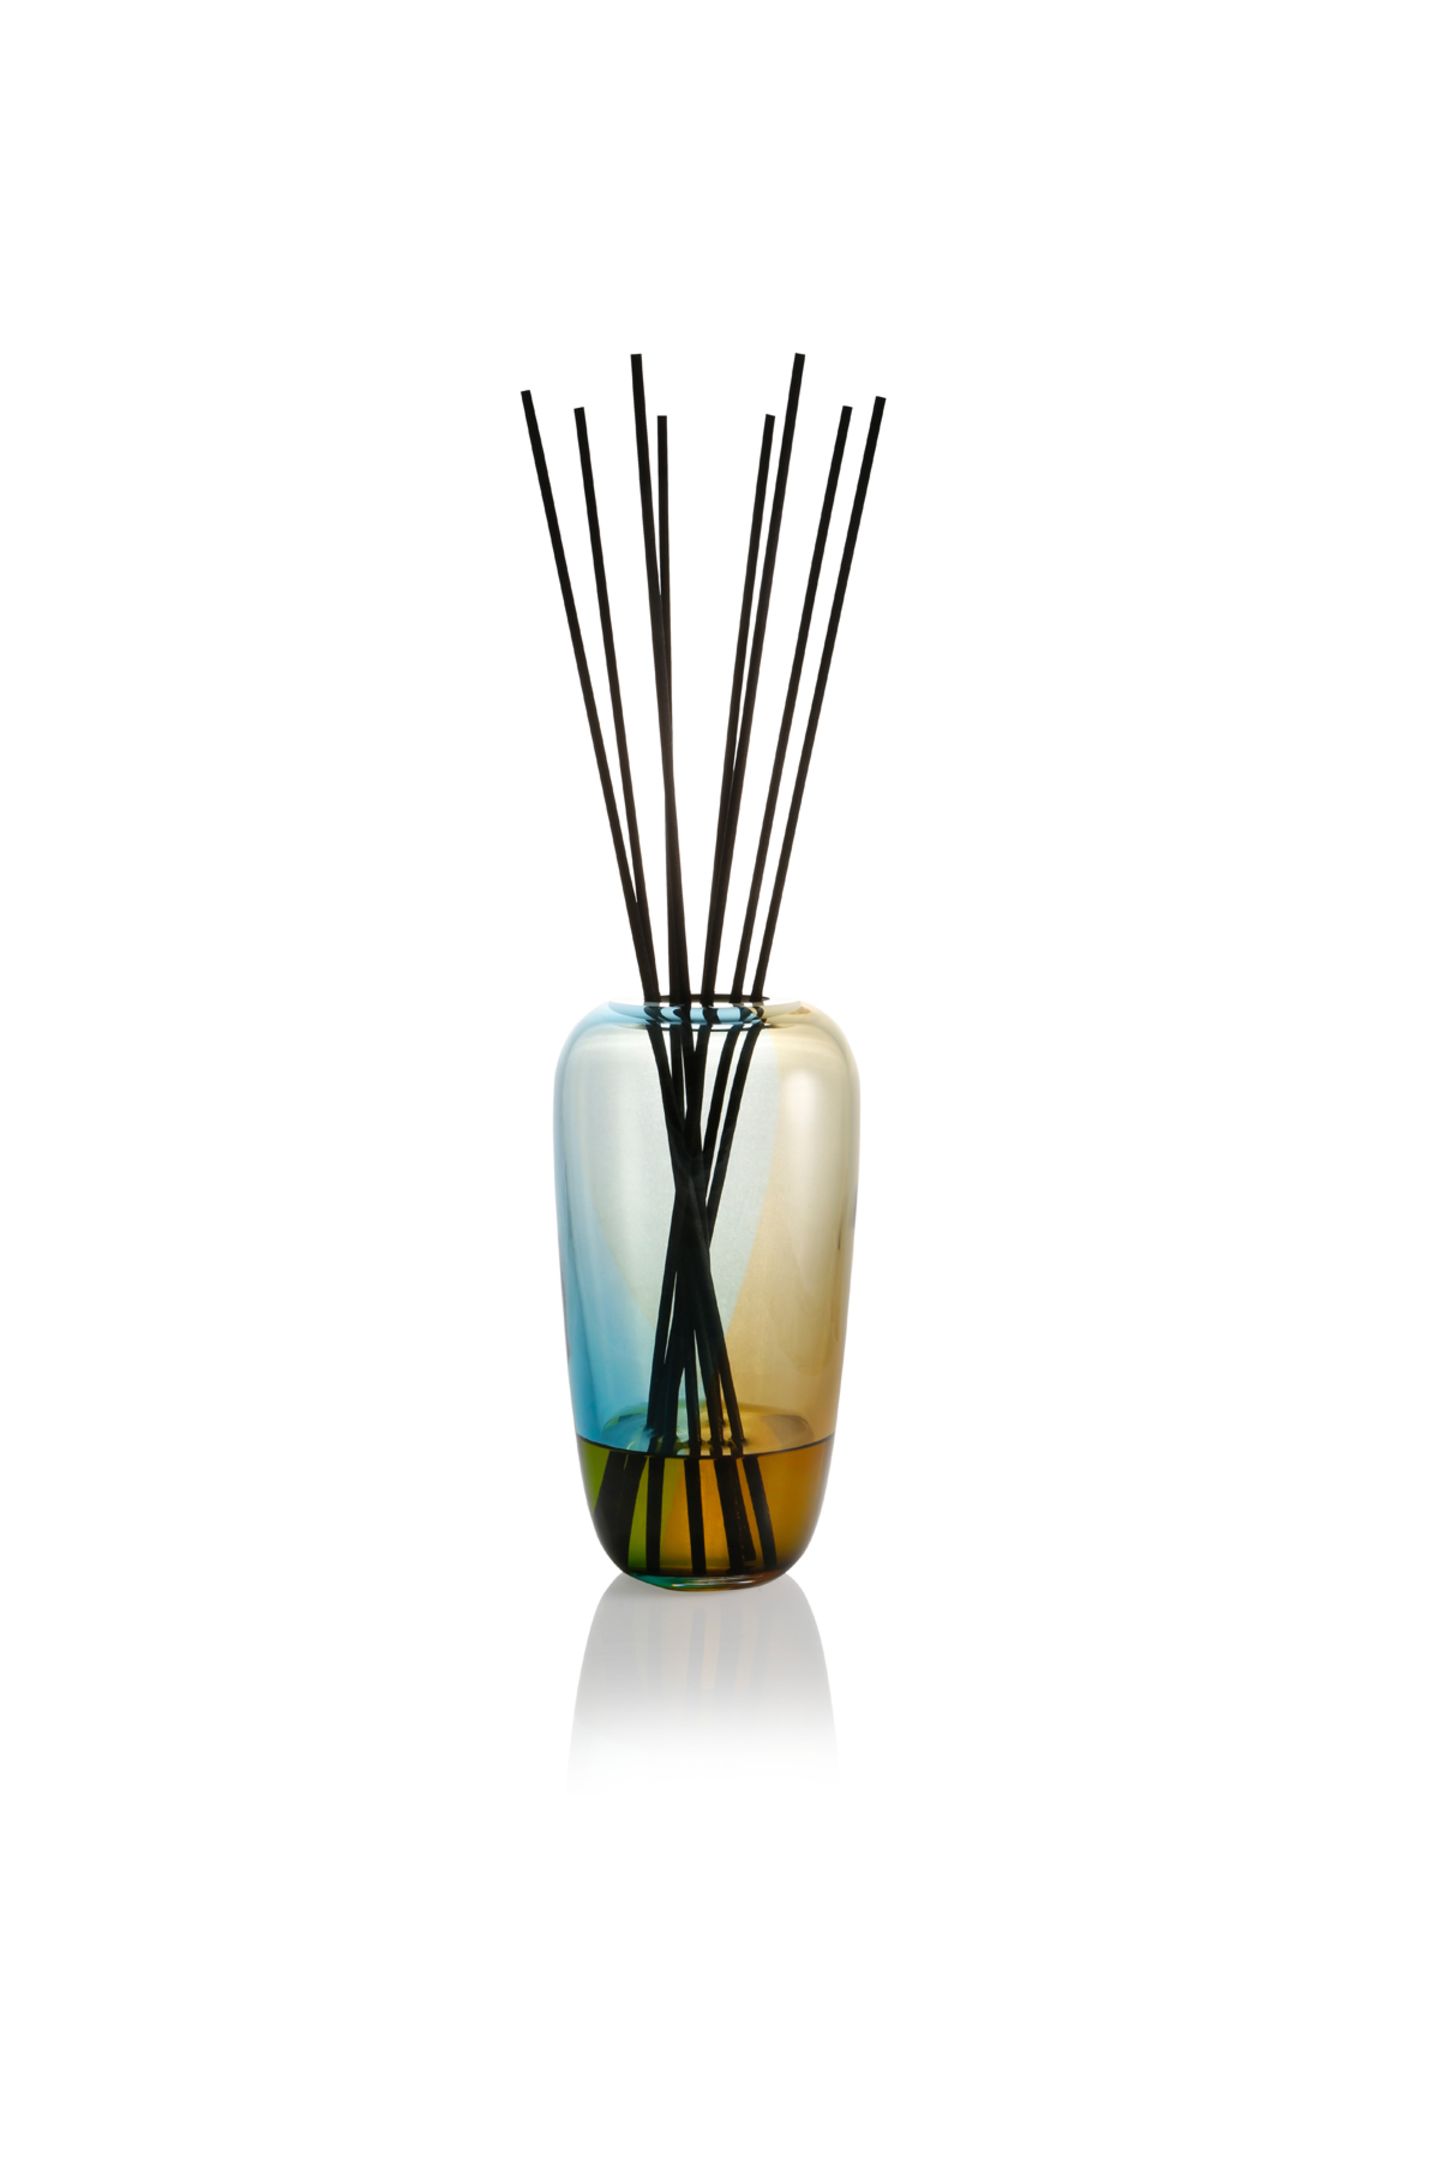 Schön und für immer: Die Vasen sind mundgeblasene Unikate von Cornelius Reér und können mit Duftölen und -stäbchen aller Art kombiniert werden. Diffusor Primary von Rebado, ca. 125 Euro.